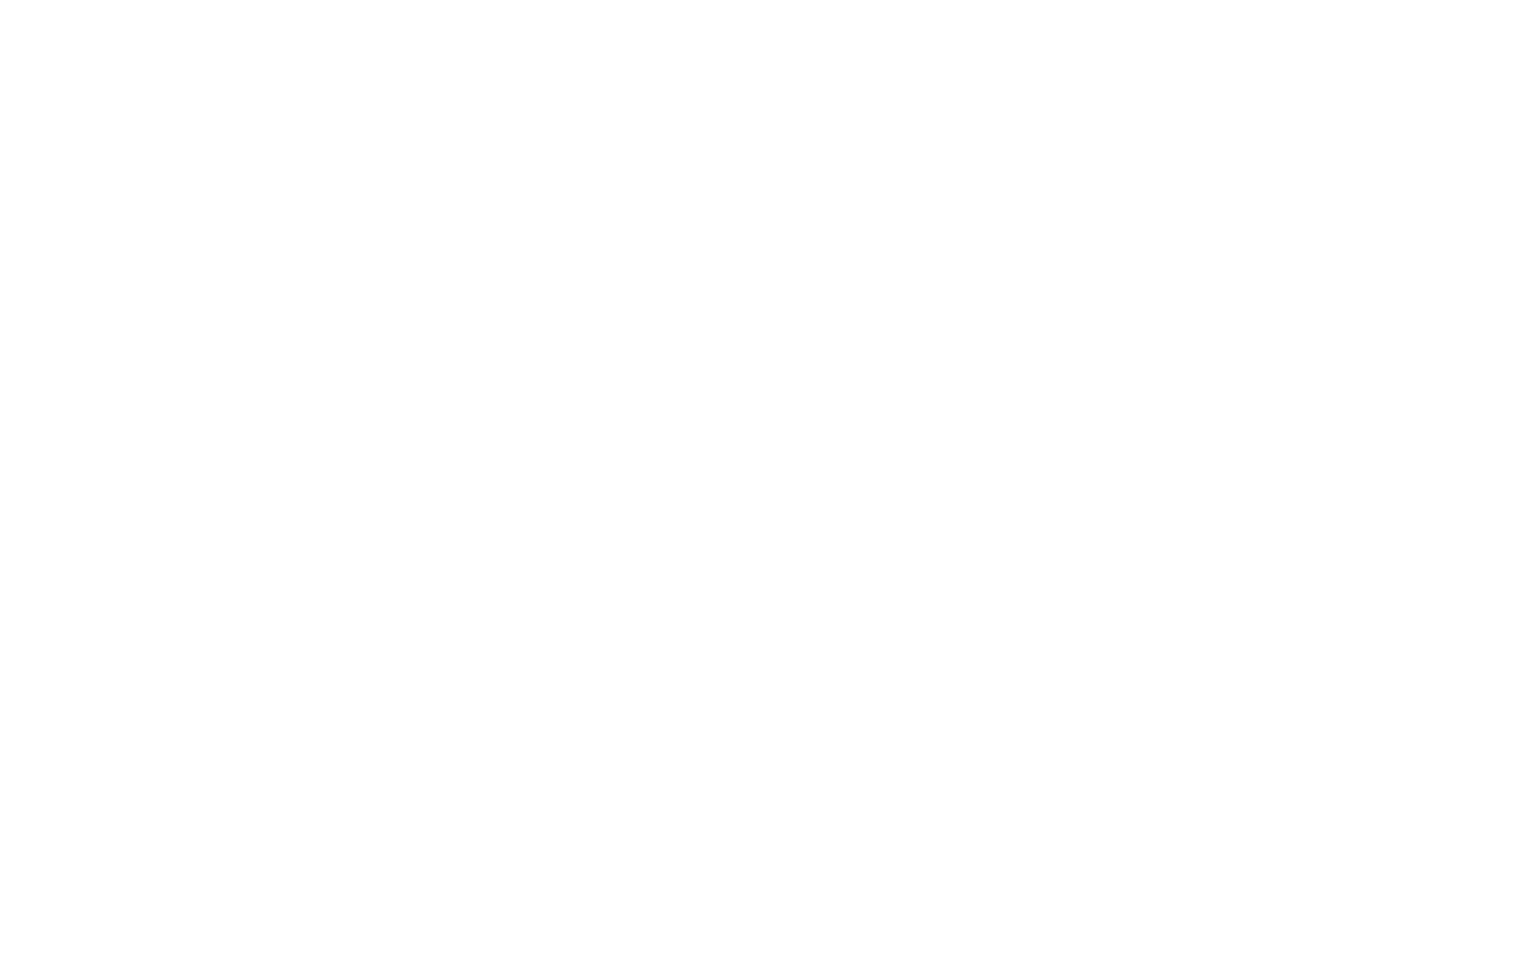 Televisa logo pour fonds sombres (PNG transparent)